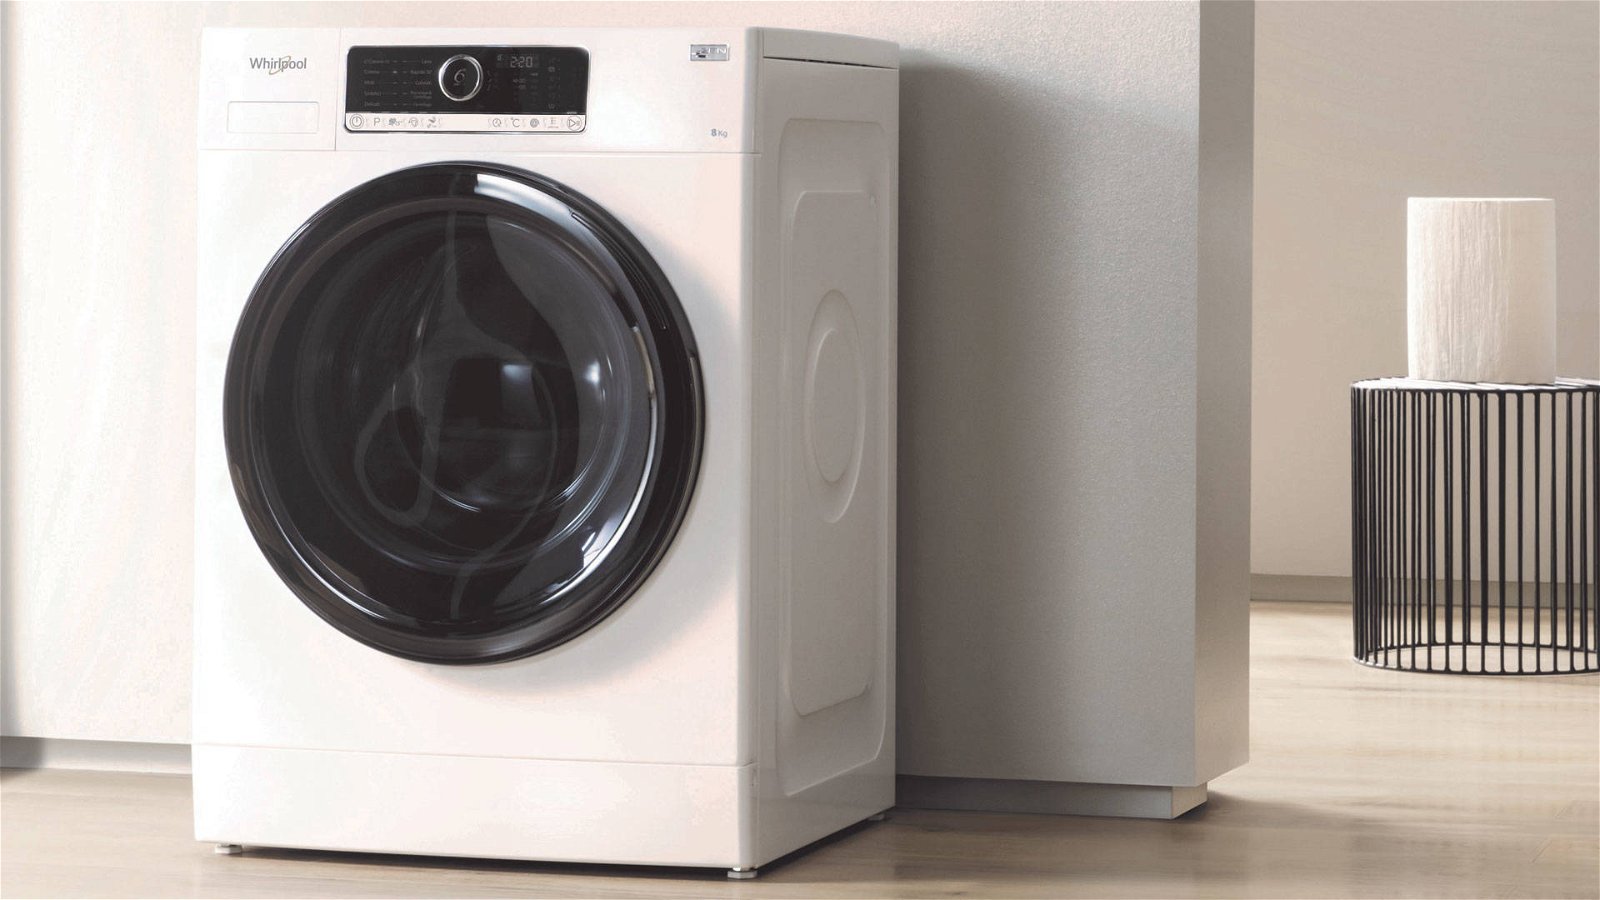 Immagine di Whirlpool Supreme Care Best Zen, la lavatrice più silenziosa del mercato